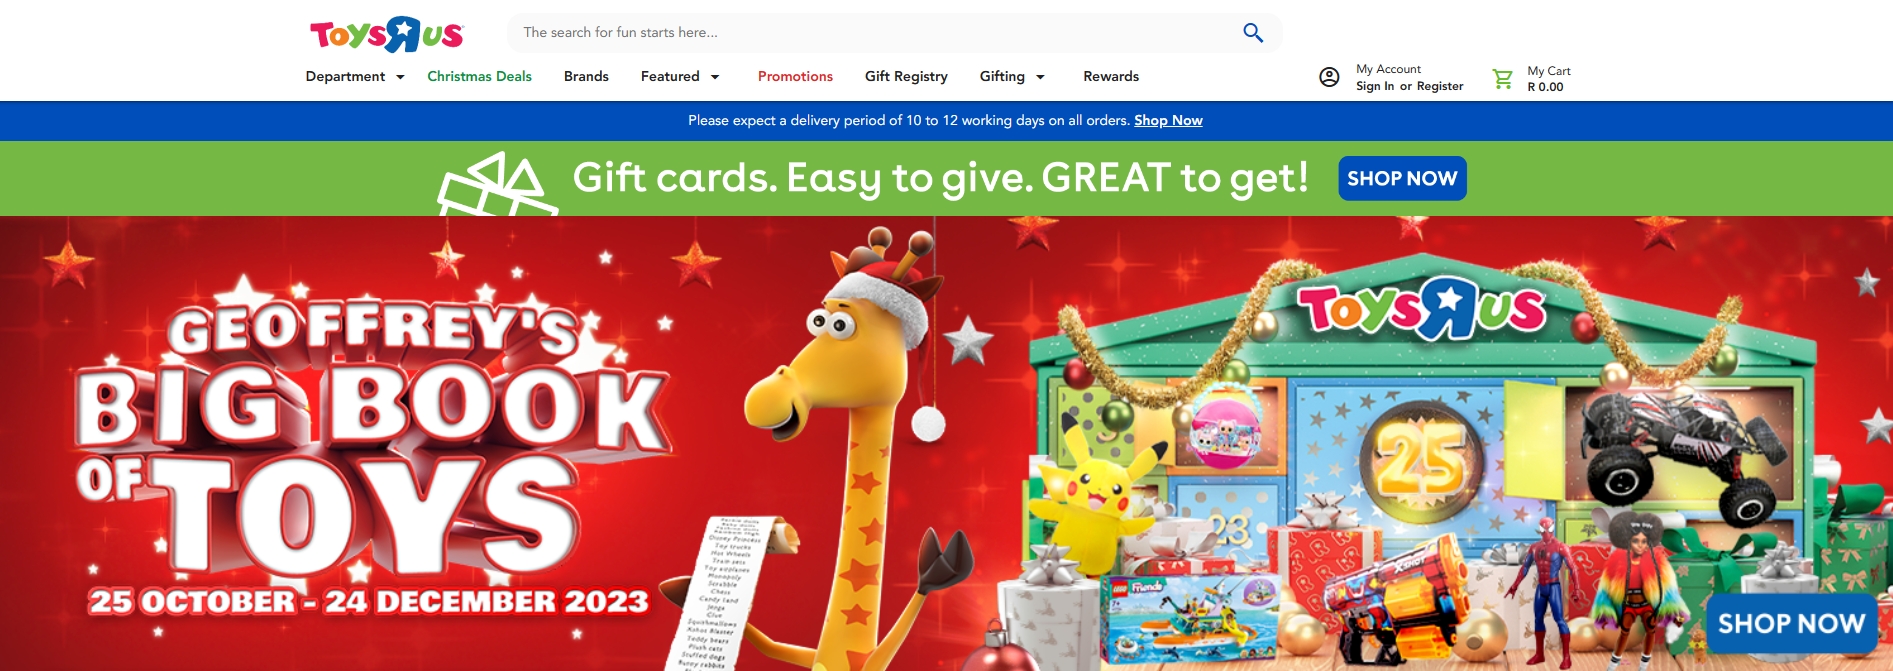 Toys Rus Online Shop website